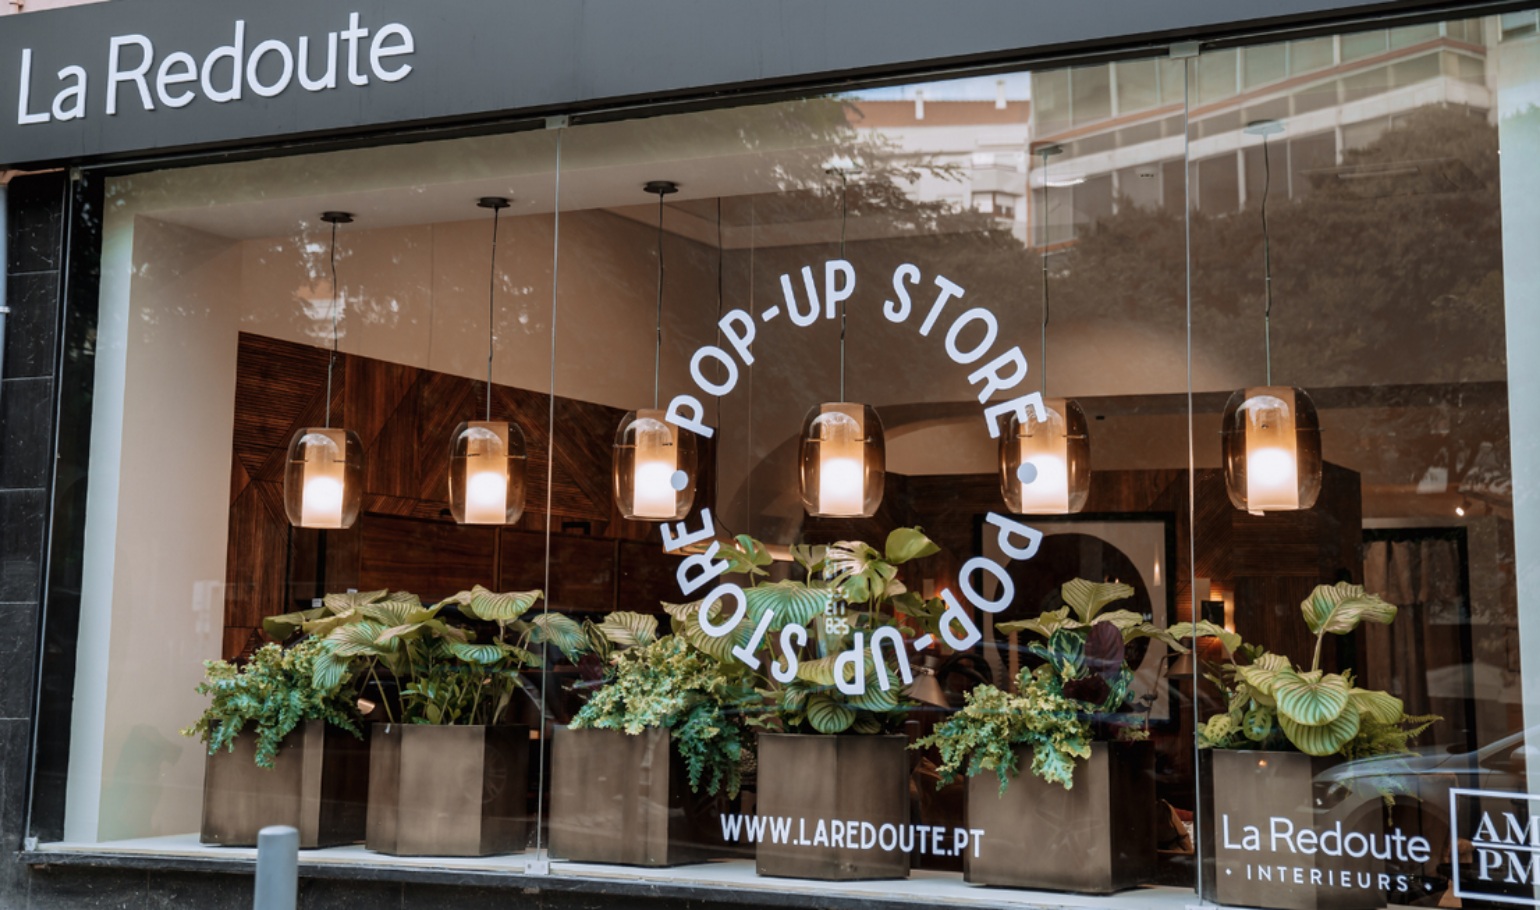 Comecou o sonho: Já abriu a primeira loja La Redoute em Portugal 